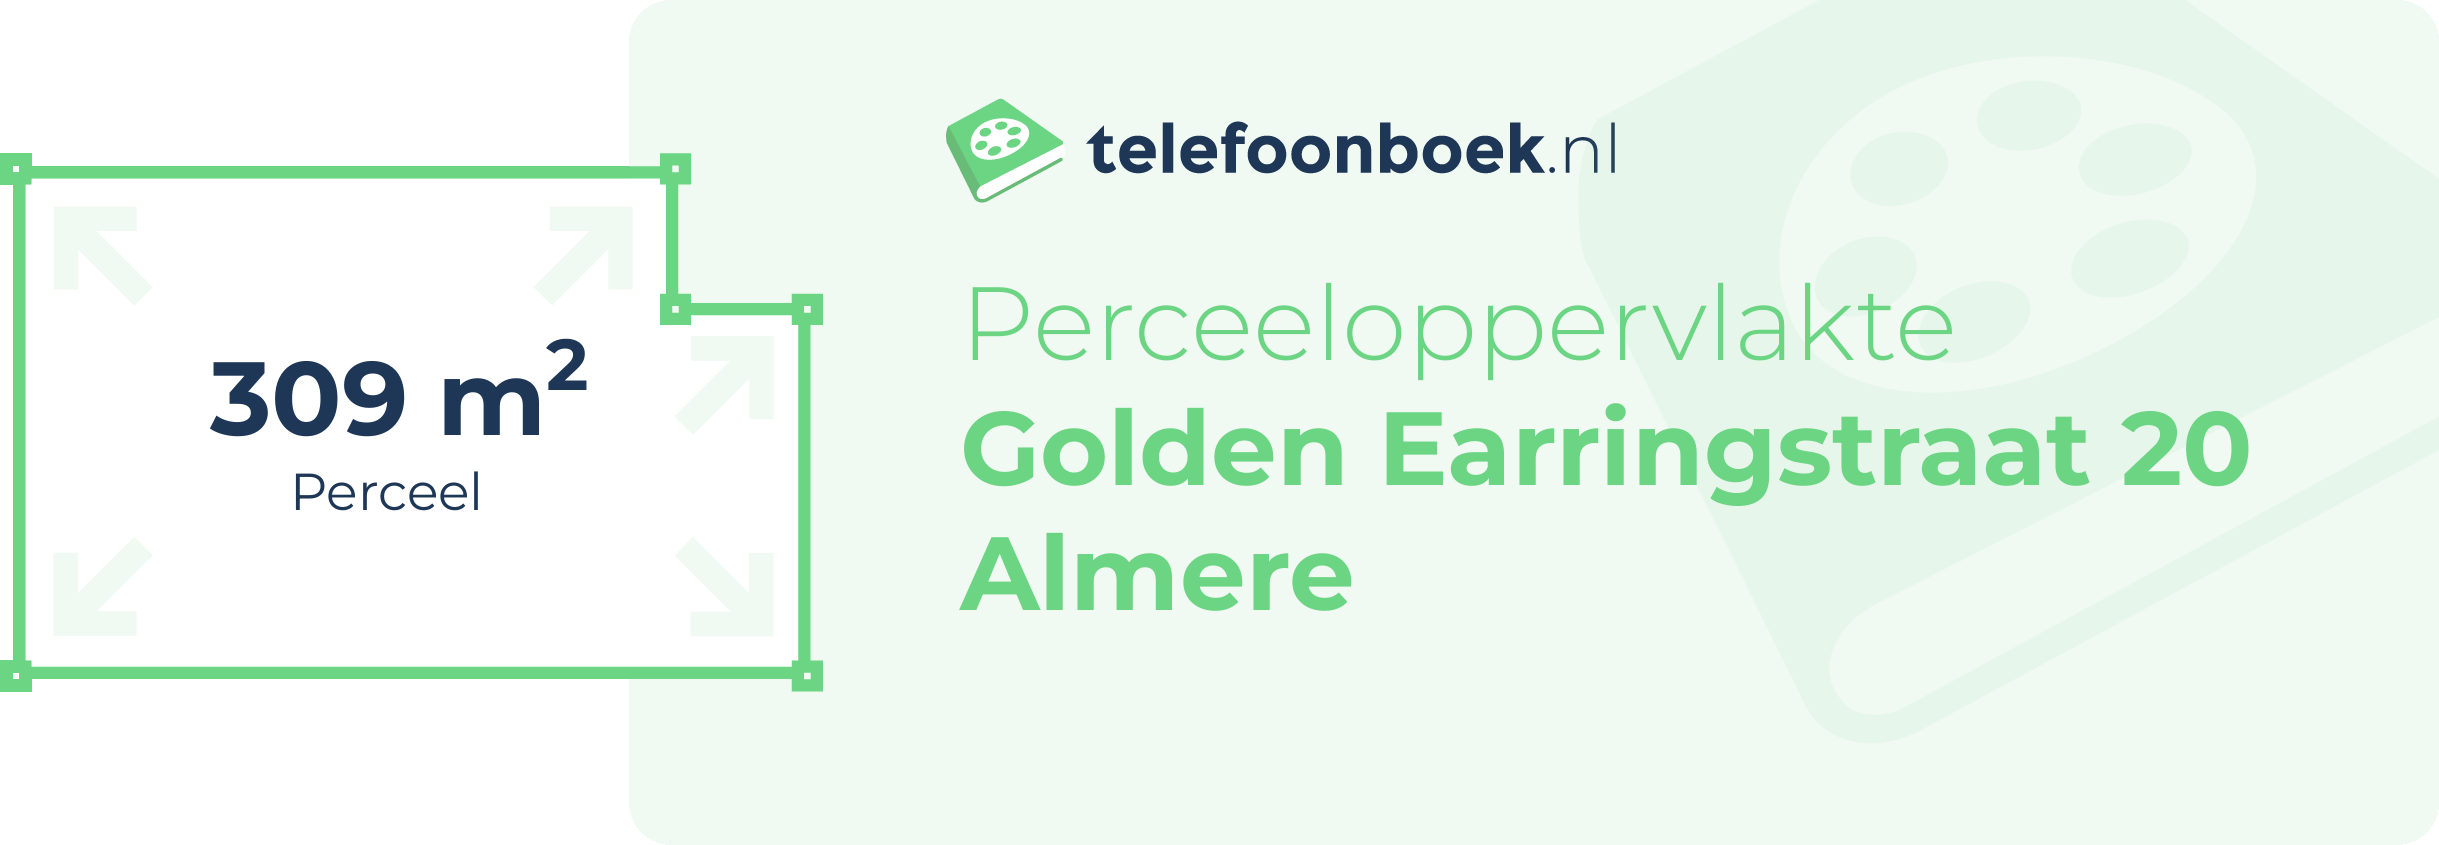 Perceeloppervlakte Golden Earringstraat 20 Almere